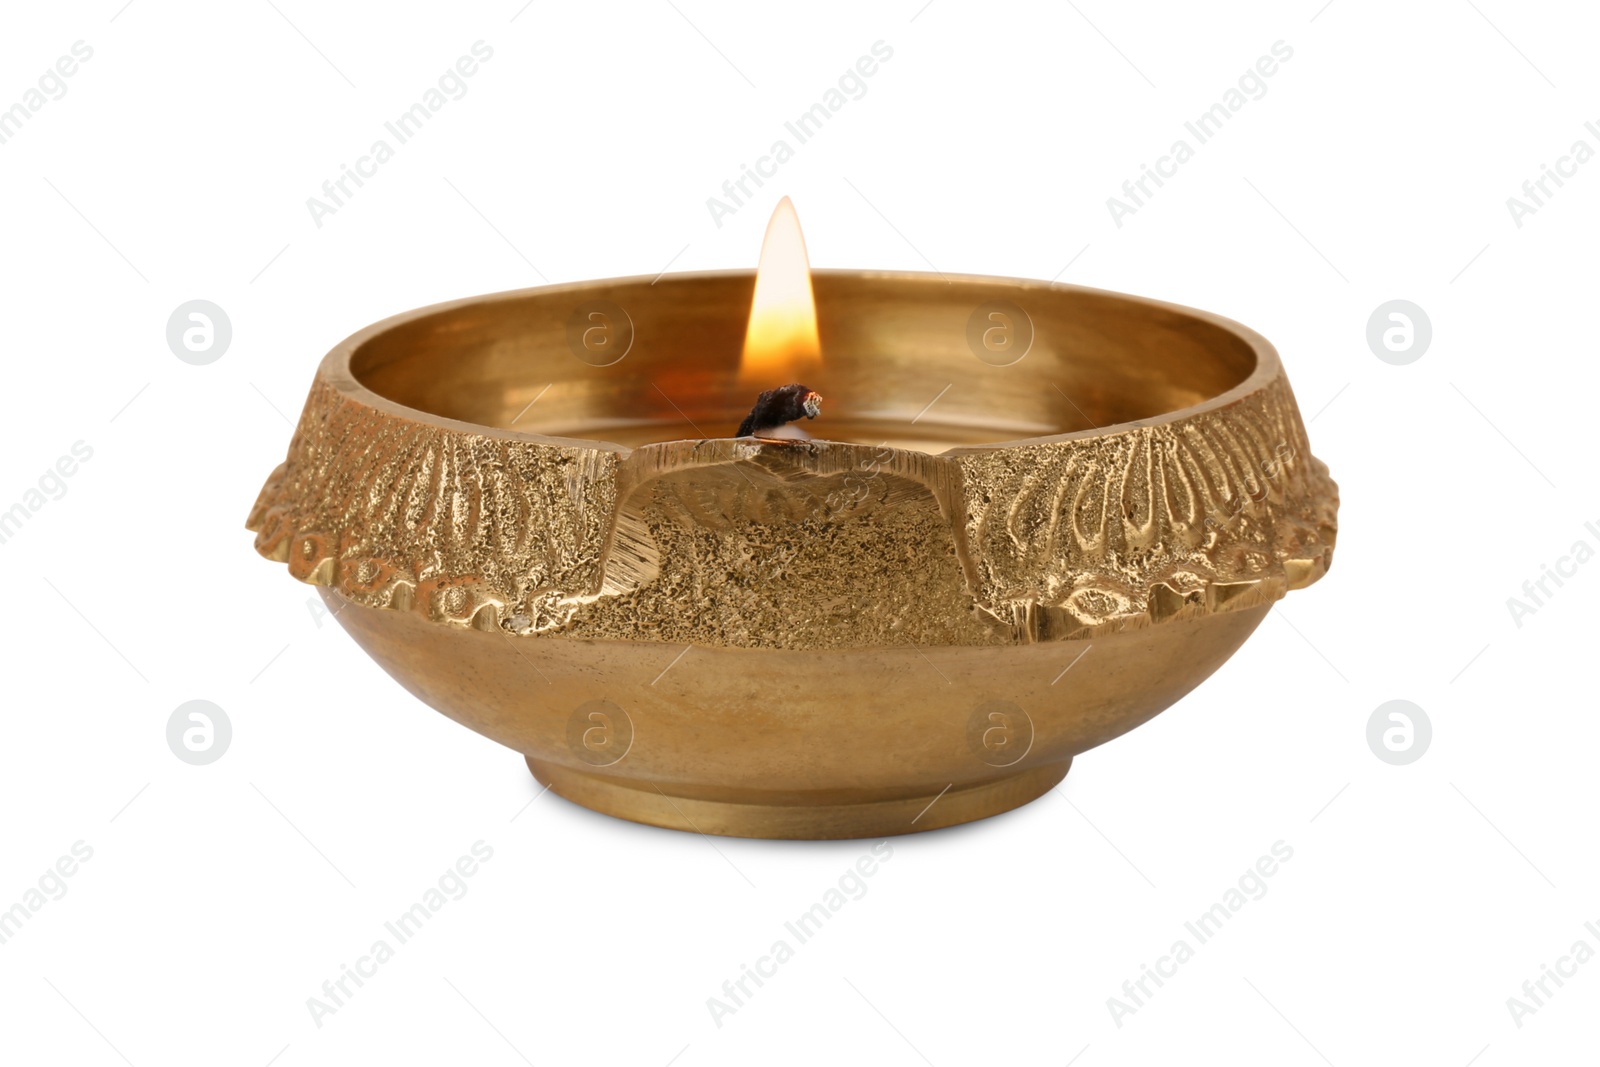 Photo of Lit diya lamp isolated on white. Diwali celebration